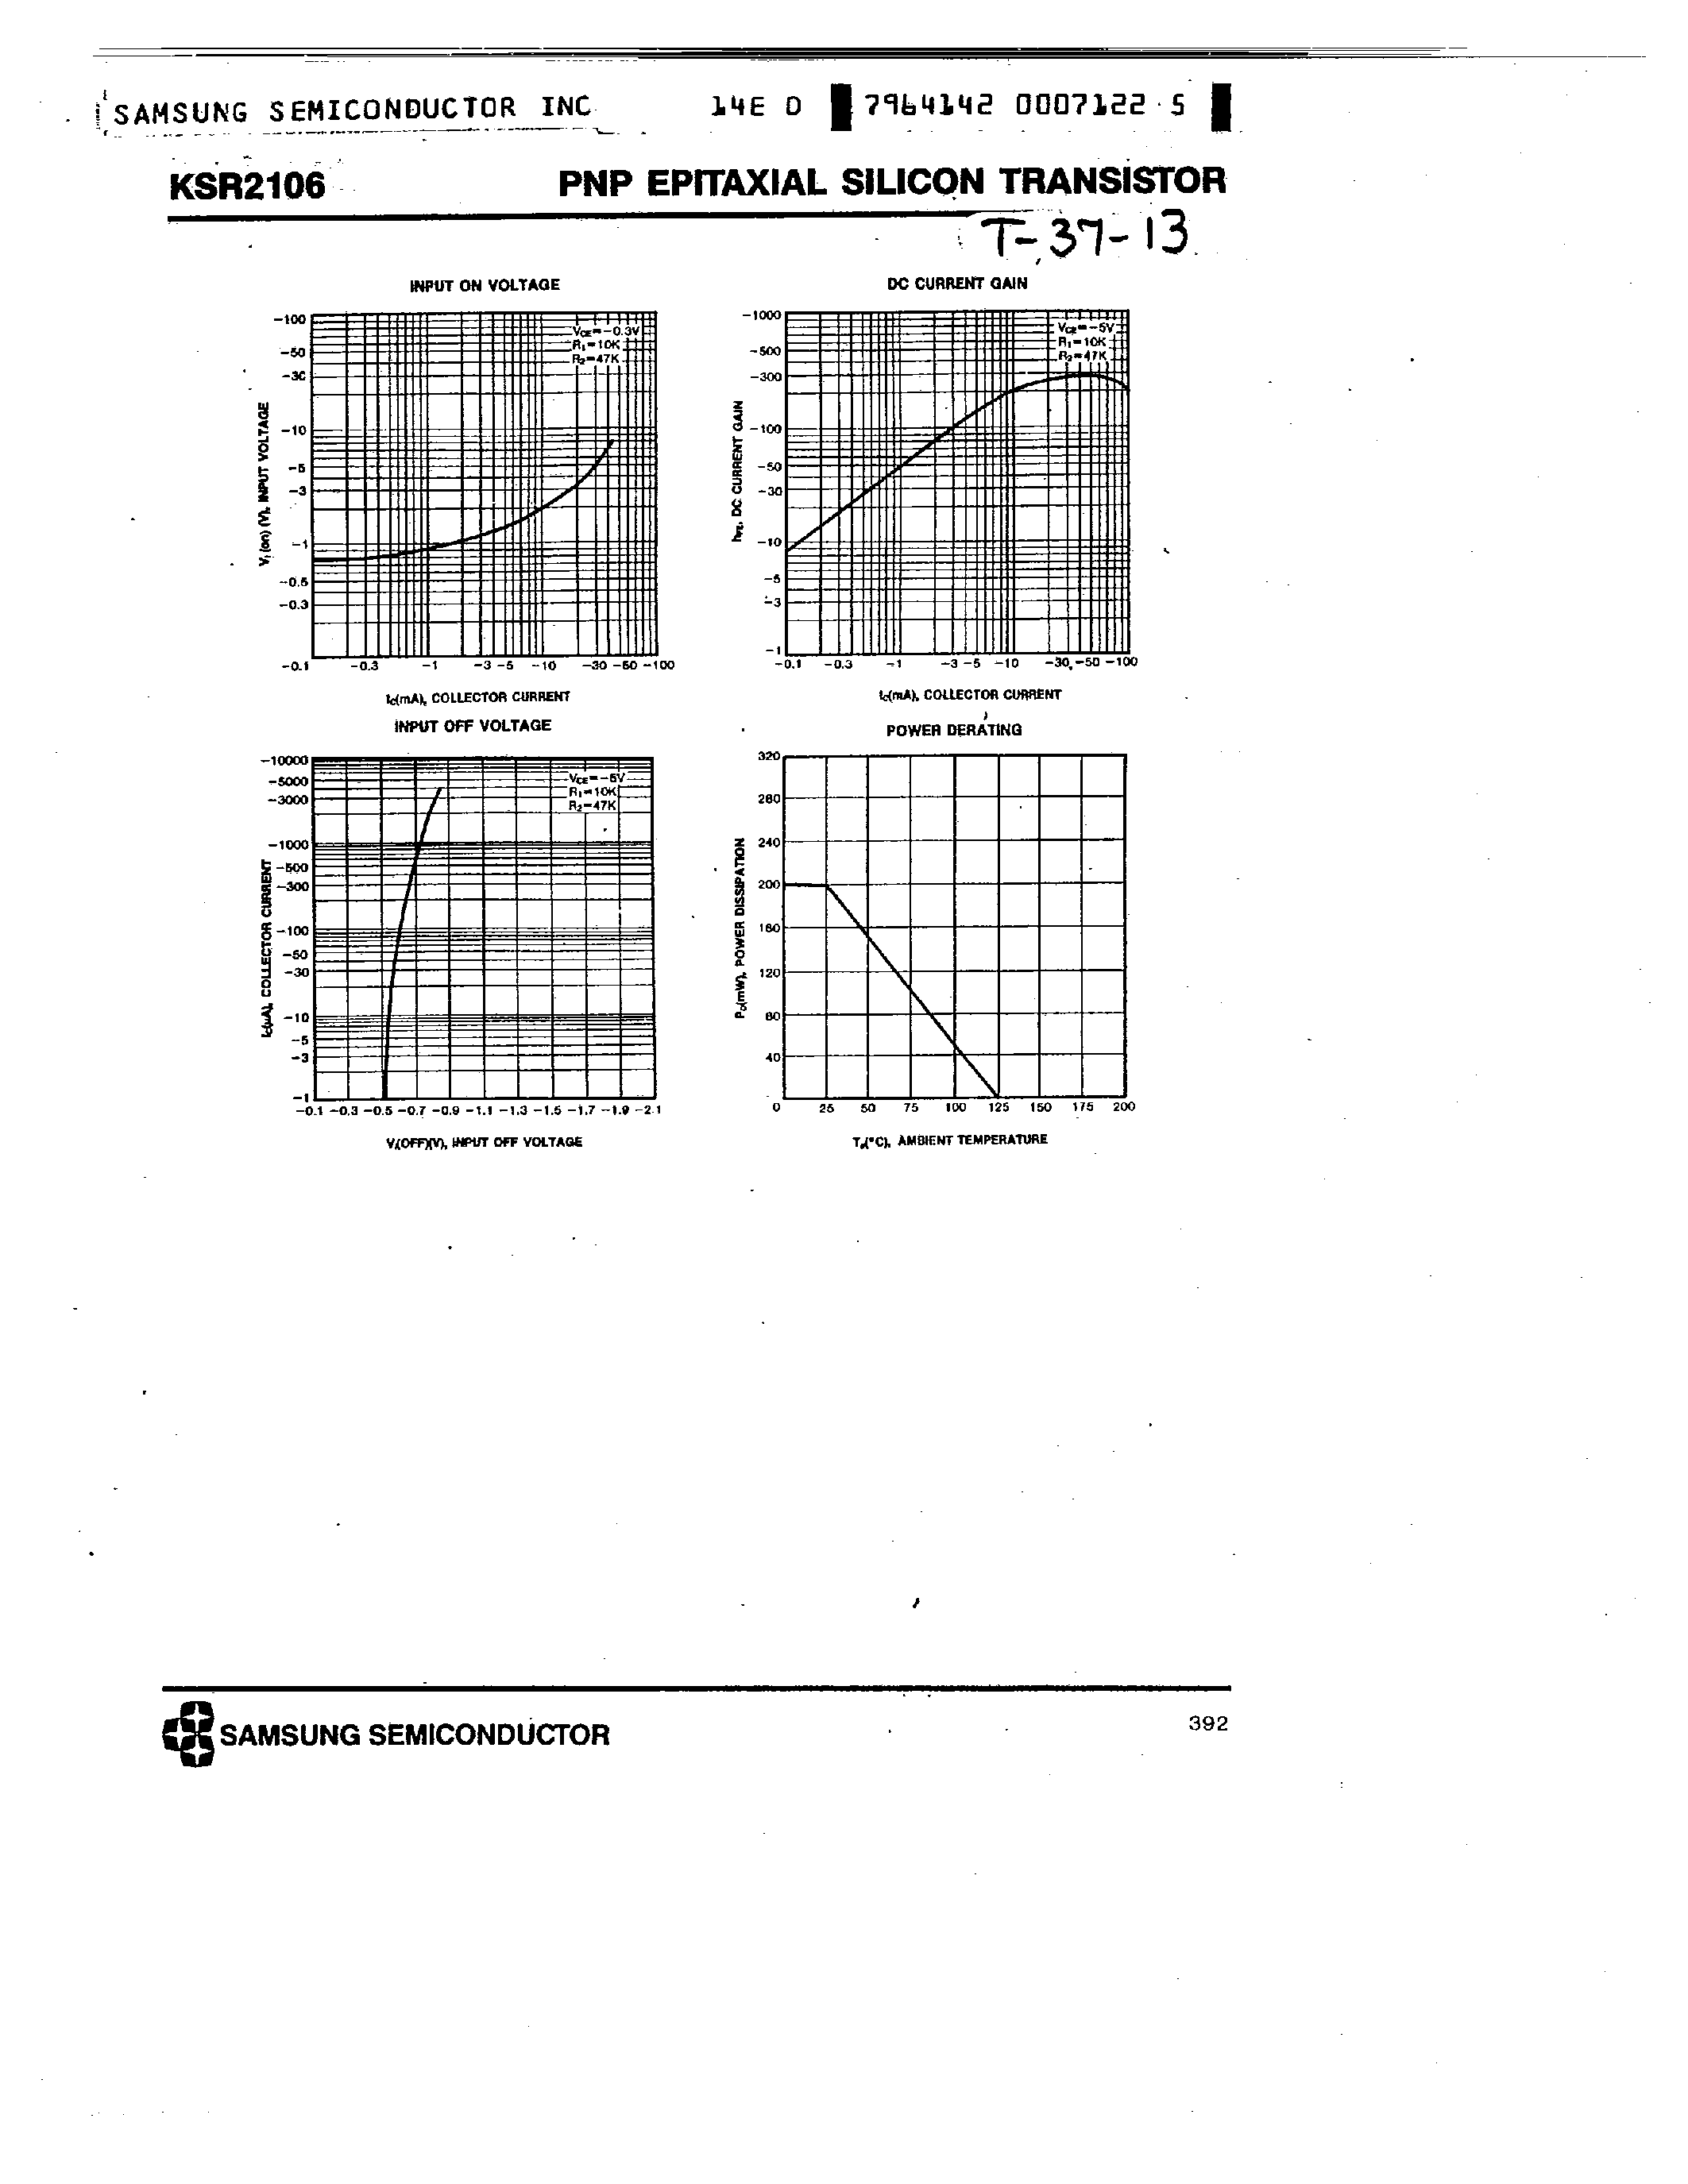 Datasheet KSR2106 - PNP (SWITCHING APPLICATION) page 2